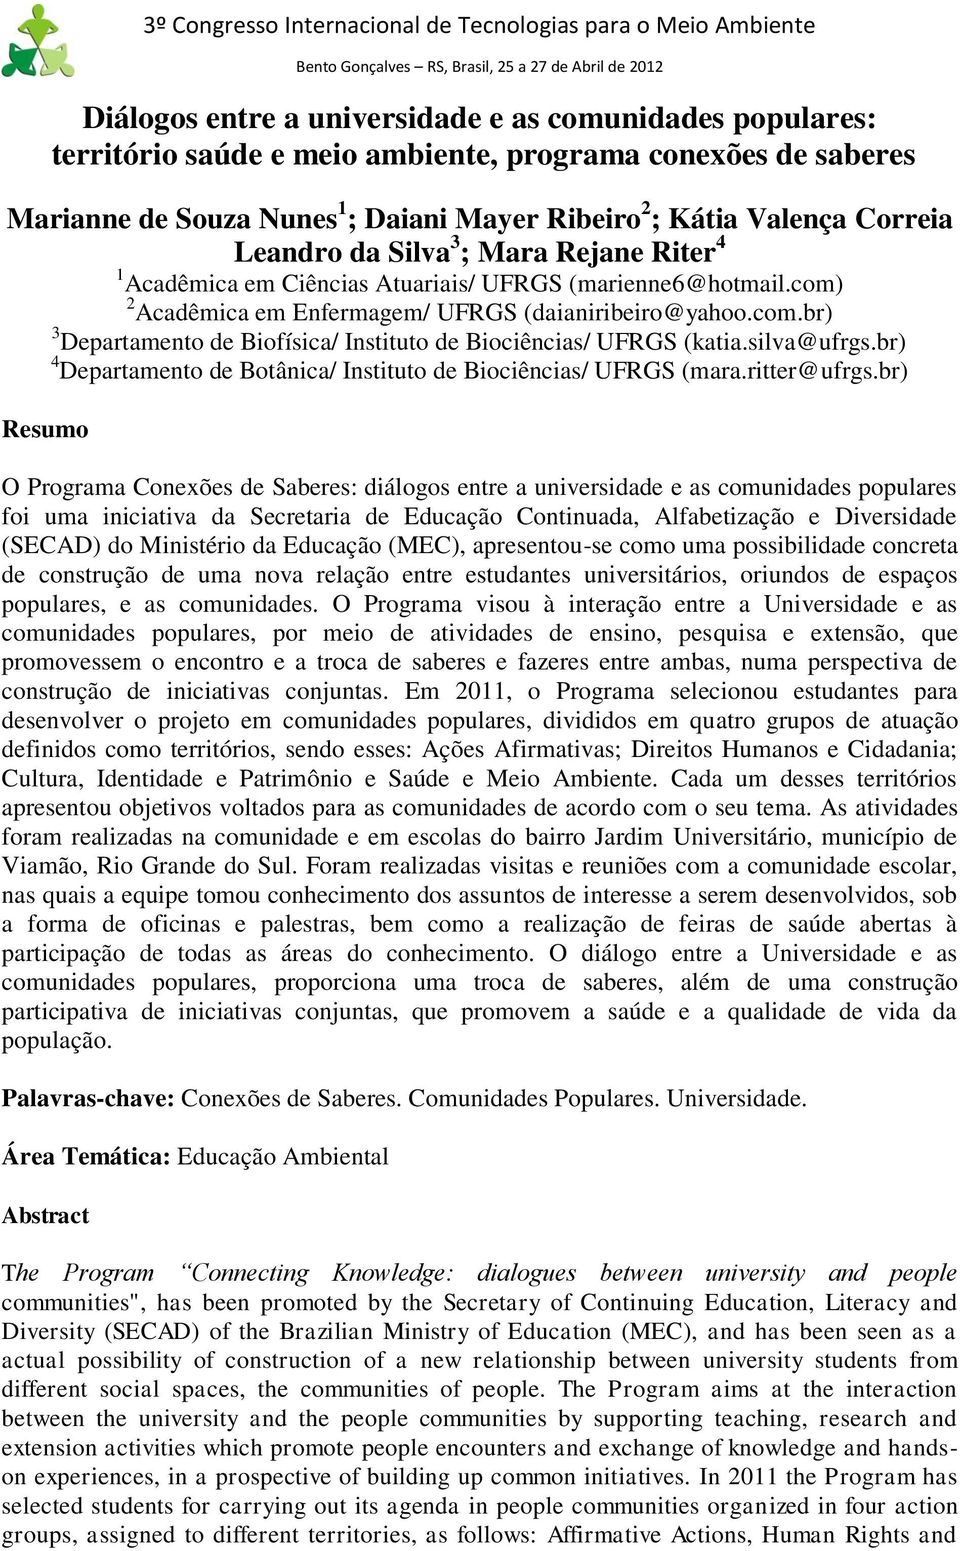 silva@ufrgs.br) 4 Departamento de Botânica/ Instituto de Biociências/ UFRGS (mara.ritter@ufrgs.